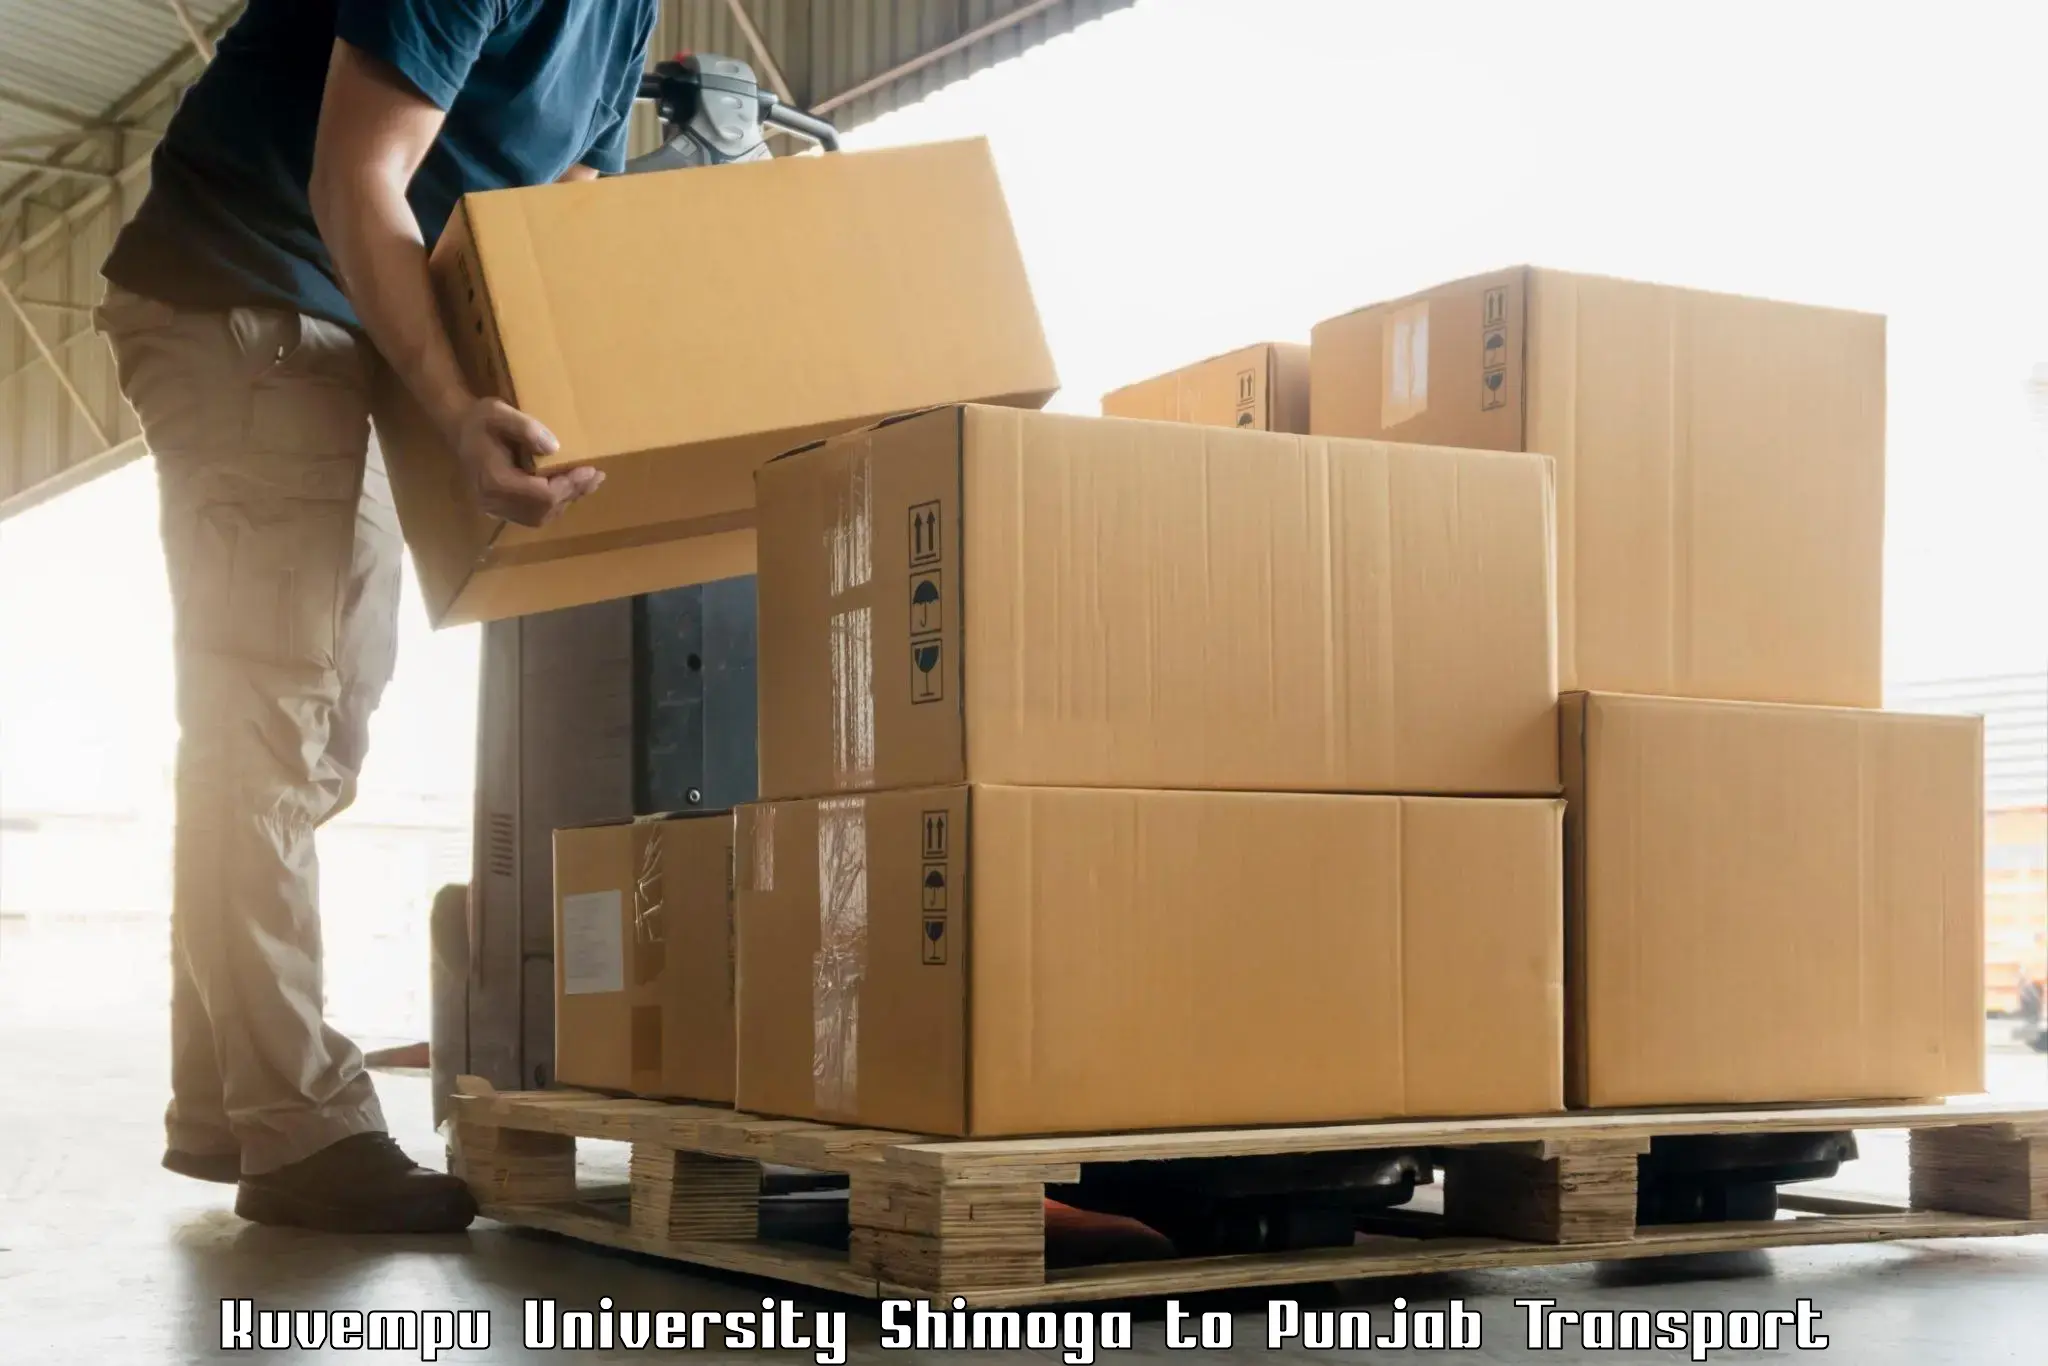 Daily parcel service transport Kuvempu University Shimoga to Abohar